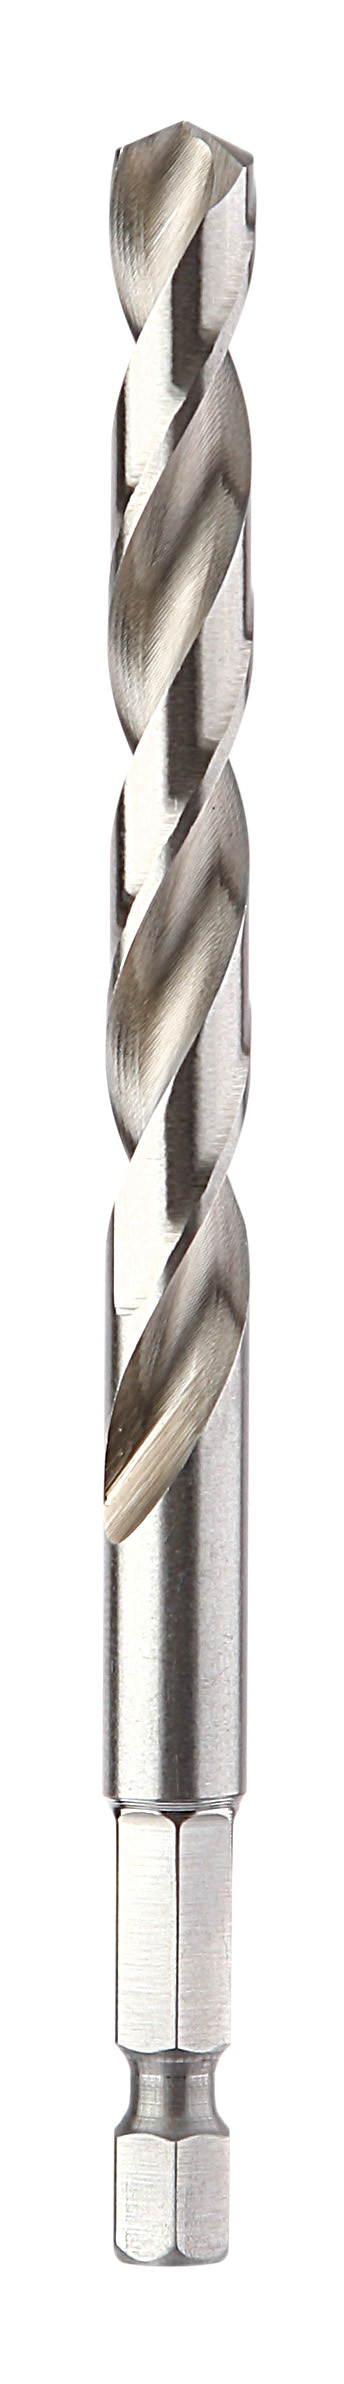 Coffret de 6 forets métaux Cobalt - 706C Diager - Spirale Unique